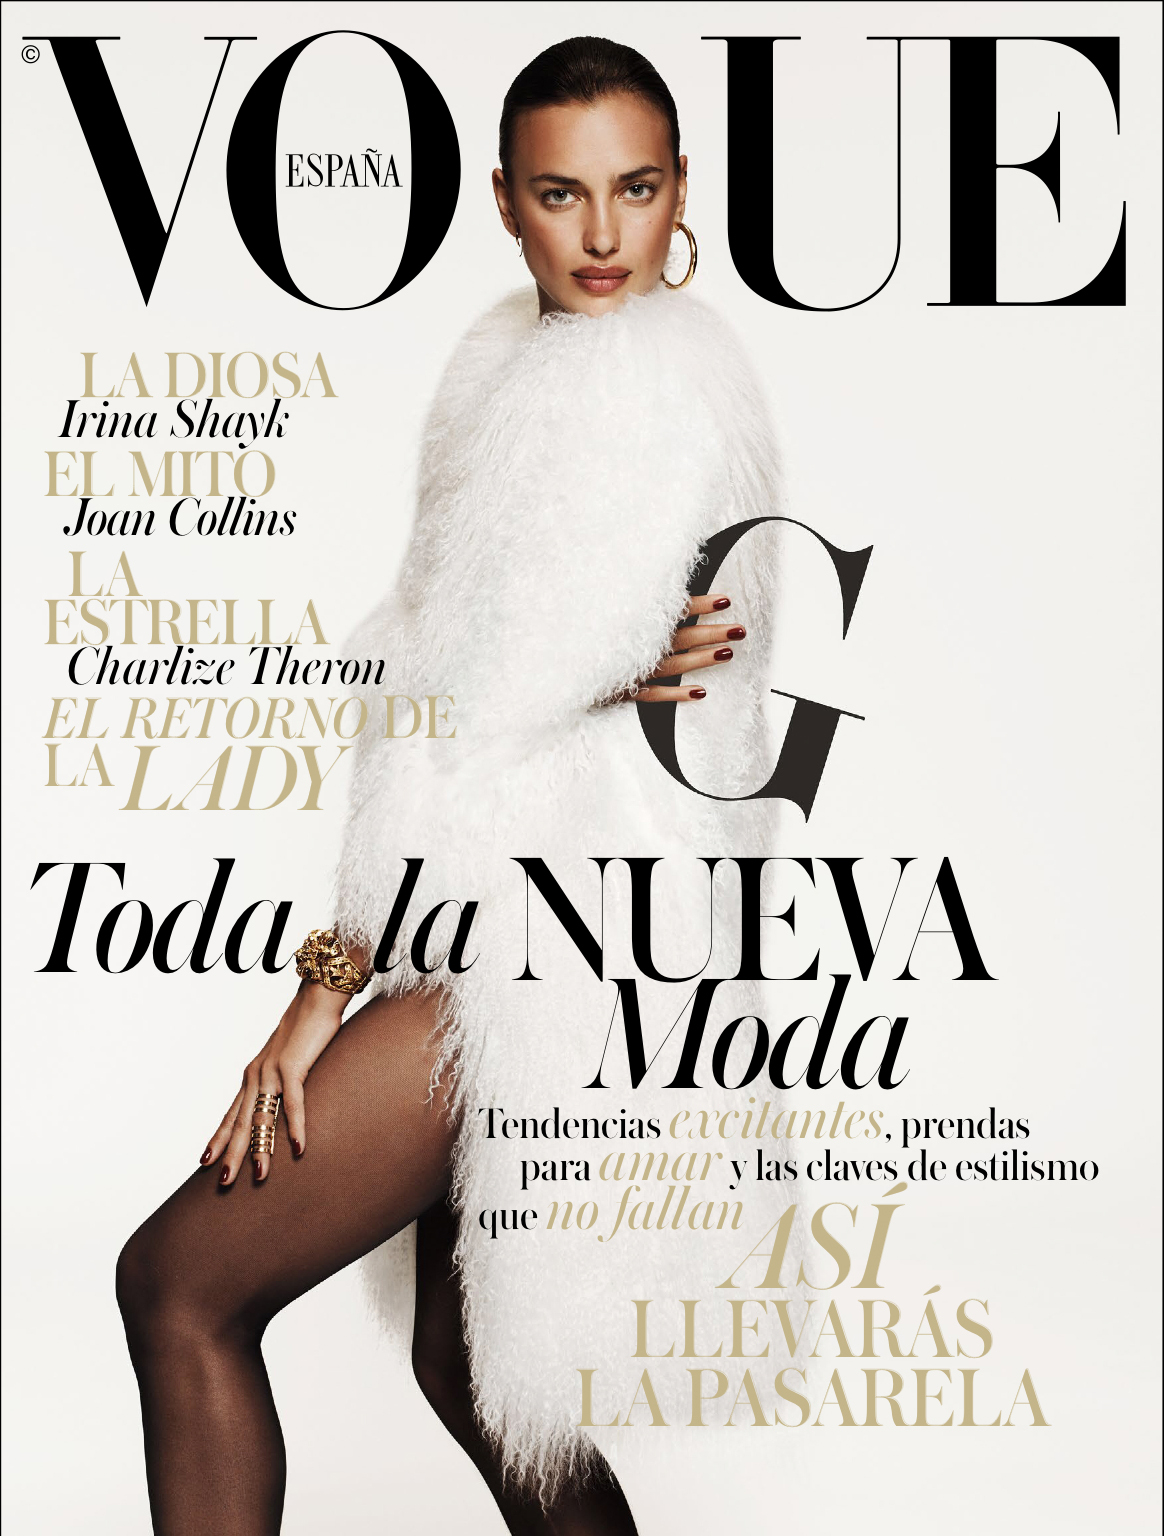 صور إيرينا شايك على غلاف مجلة vogue اسبانيا سبتمبر 2014